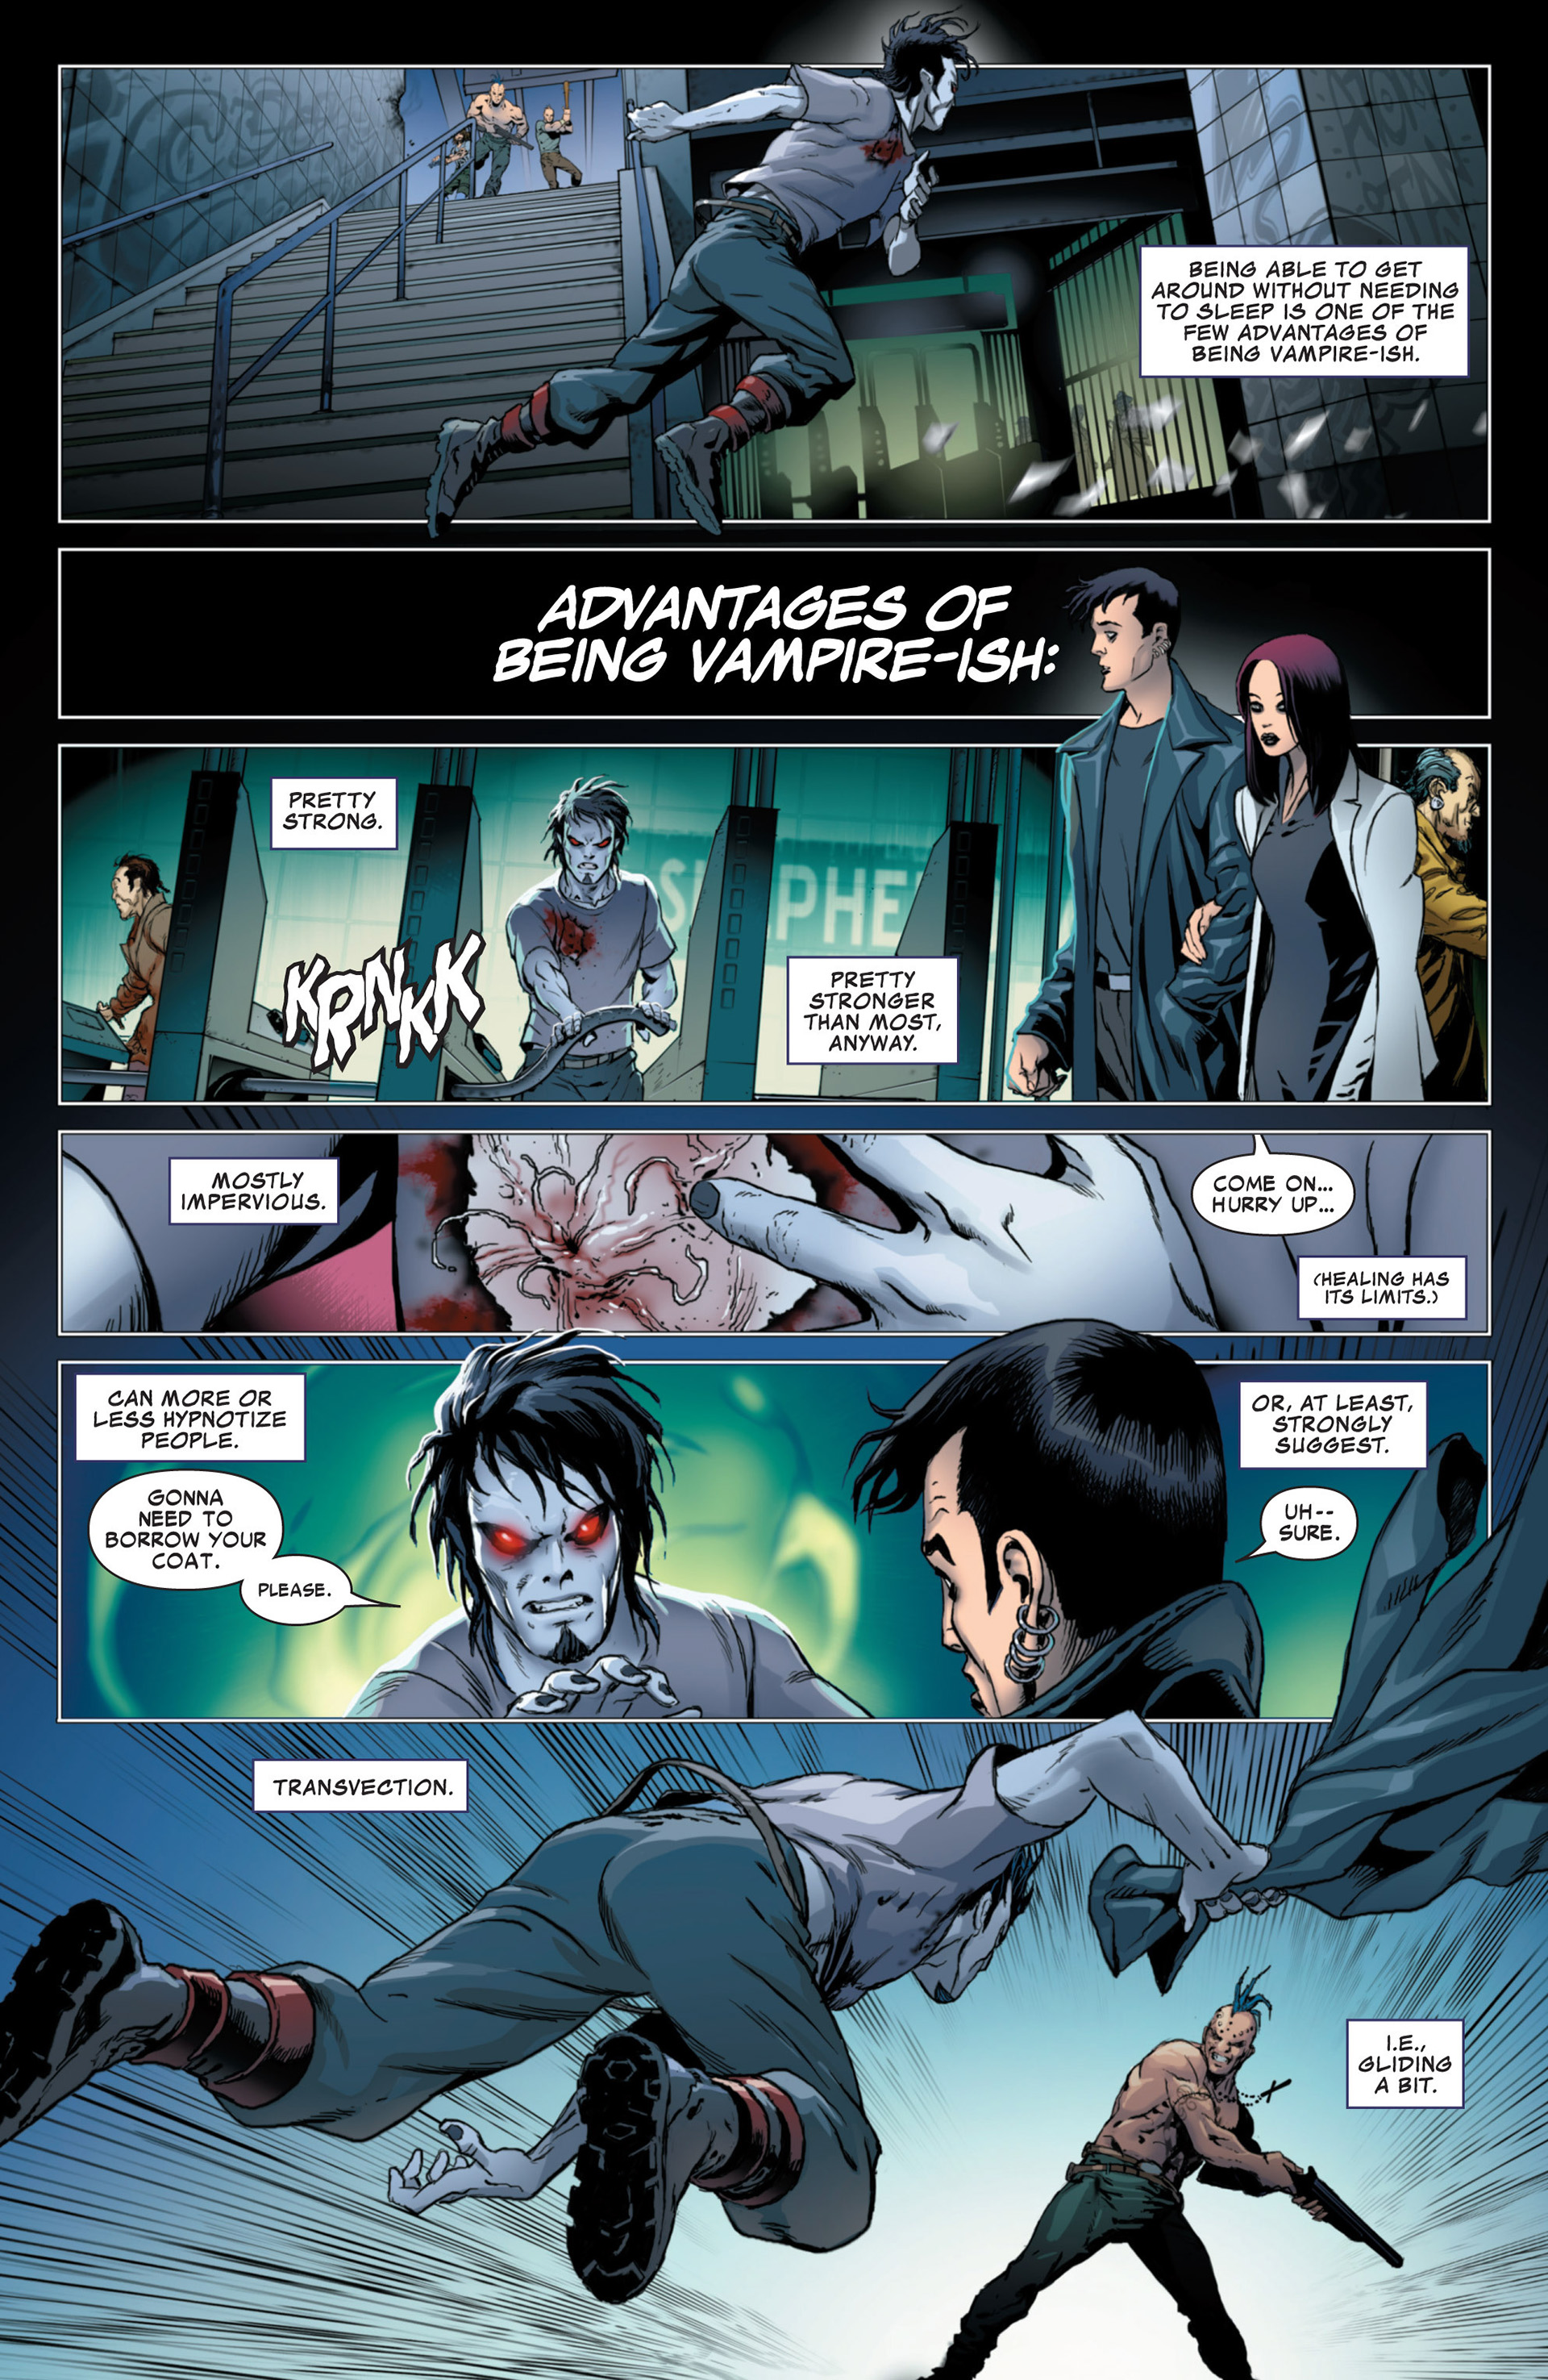 Morbius: The Living Vampire wallpaper, Comics, HQ Morbius